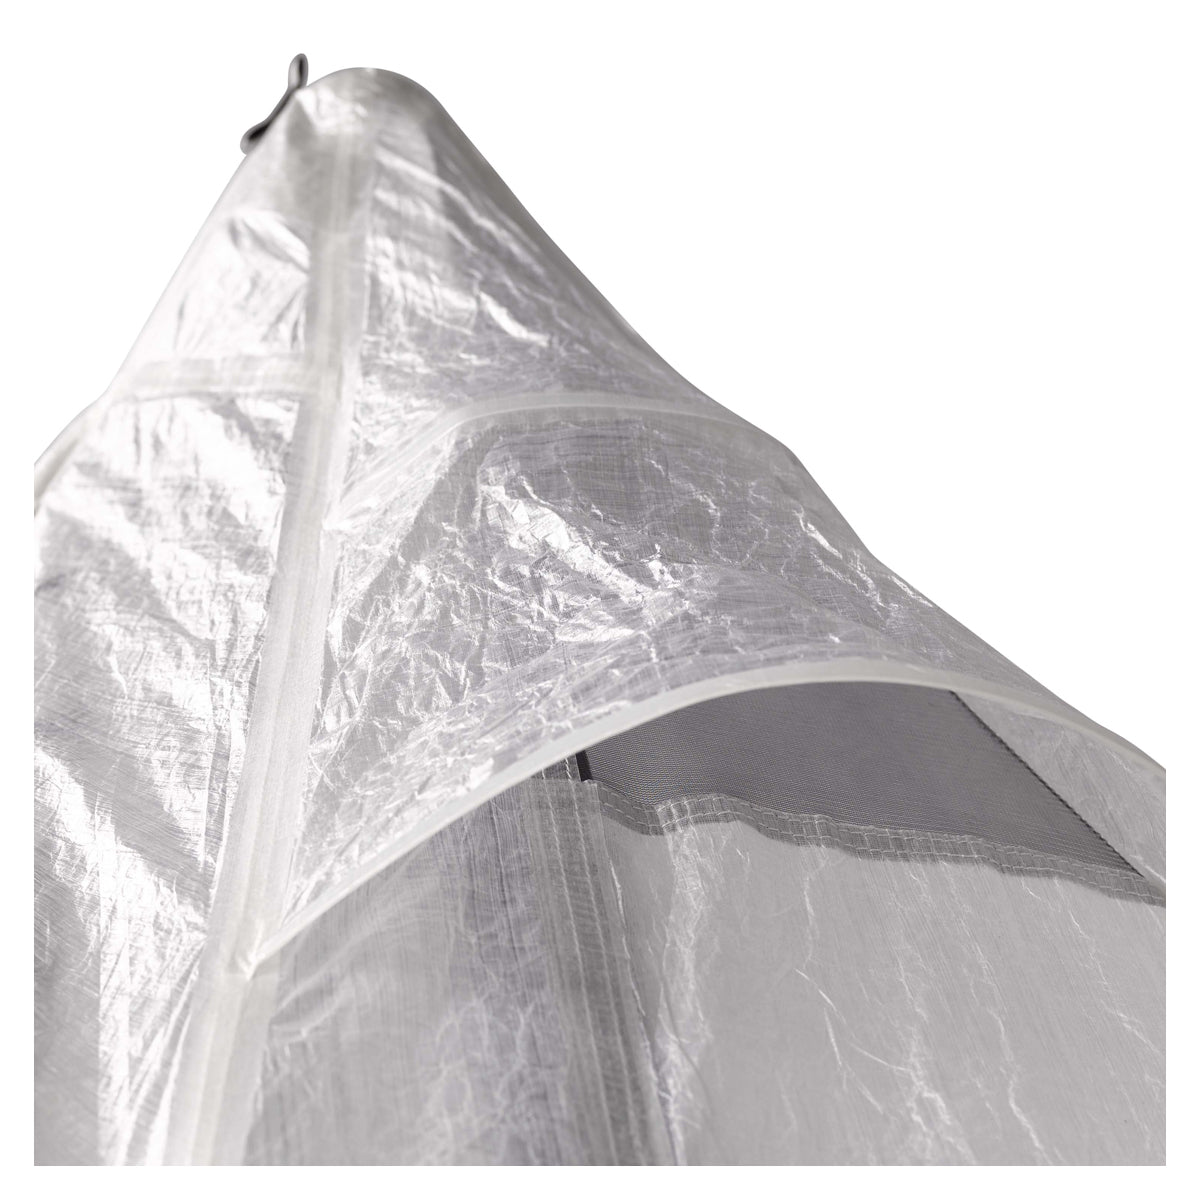 Hyperlite Mountain Gear Mid 1 Tent